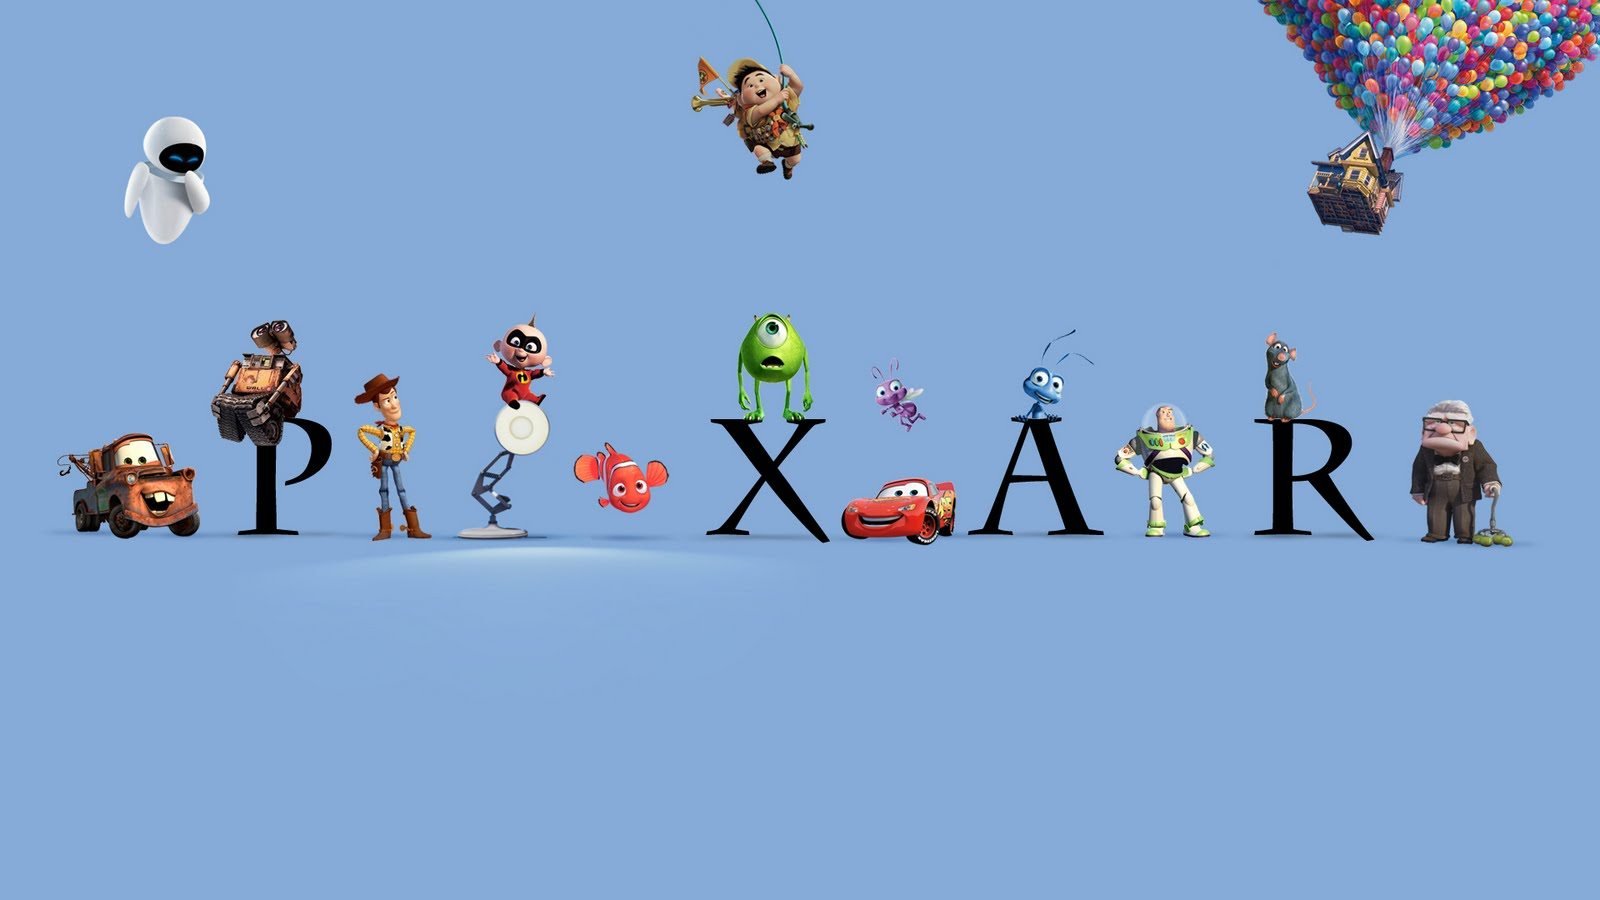 Disney e Pixar anunciam Soul, a mais nova animação dos estúdios